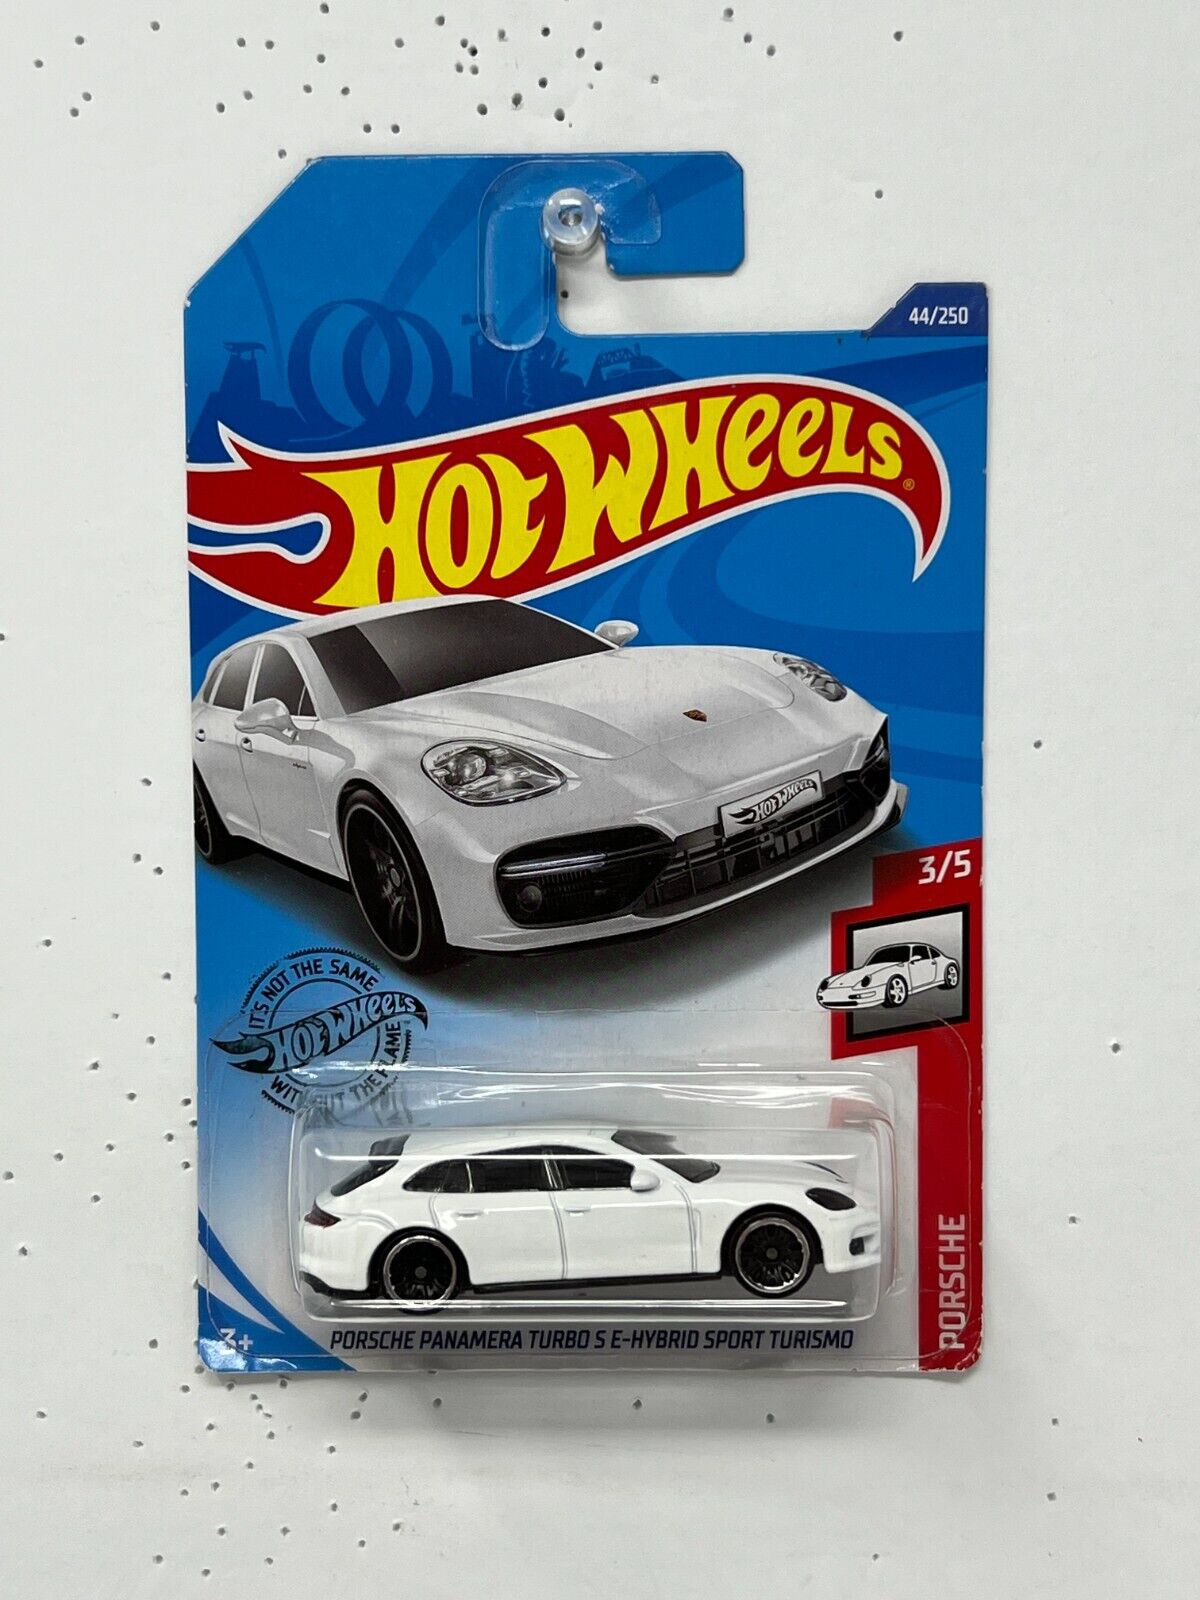 Hot Wheels Porsche Pamamera Turbo E-Hybrid Sport Turismo White 1:64 Diecast